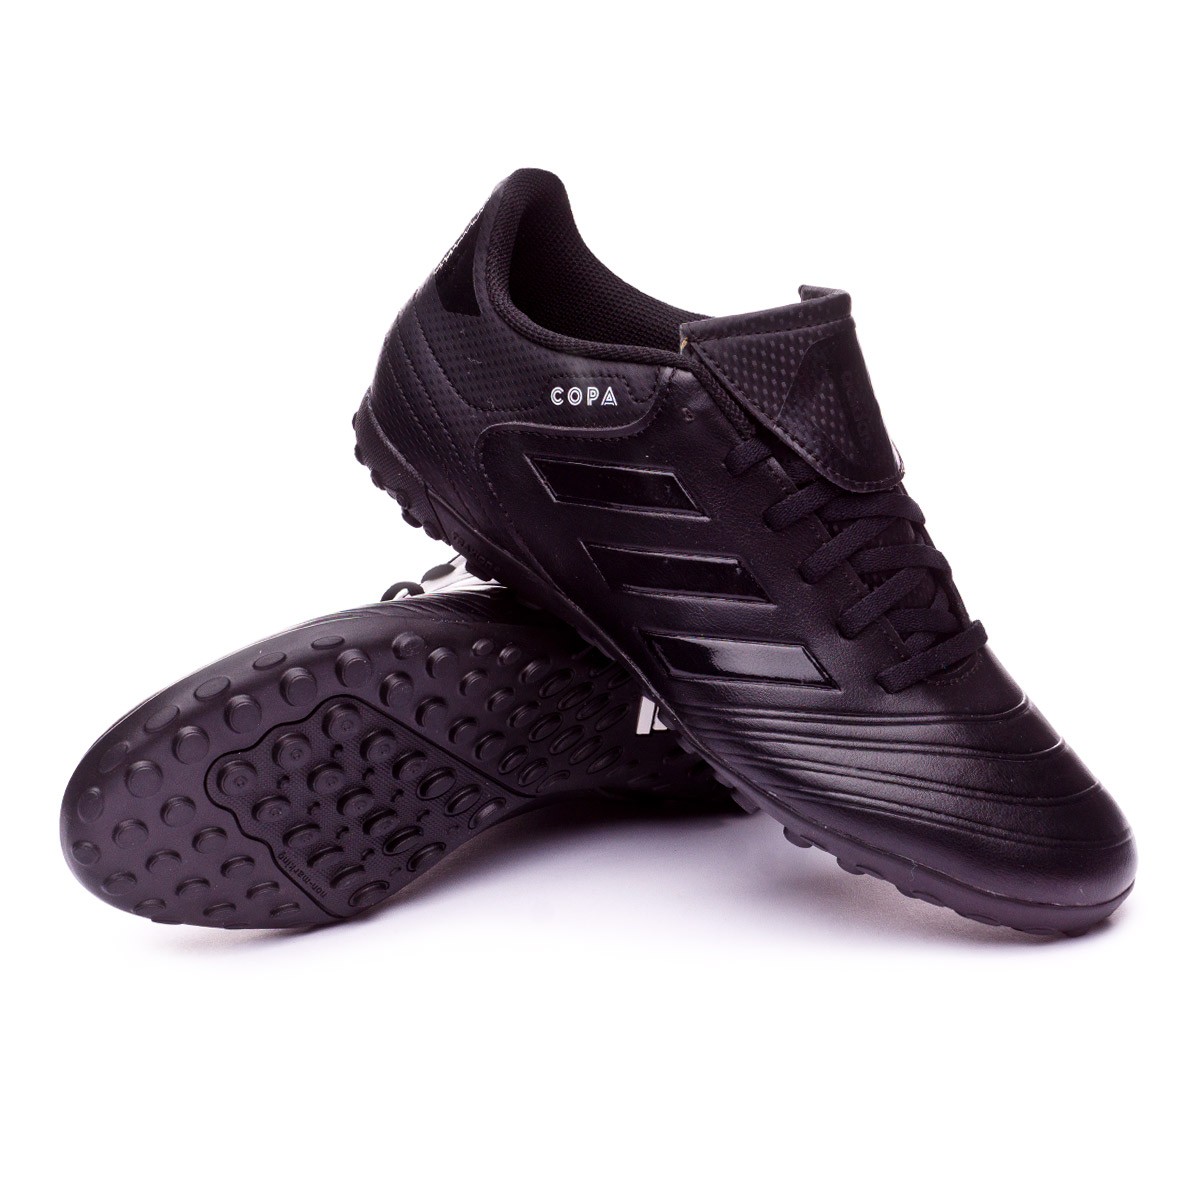 Scarpe adidas Copa Tango 18.4 Turf Core black-White - Negozio di calcio  Fútbol Emotion